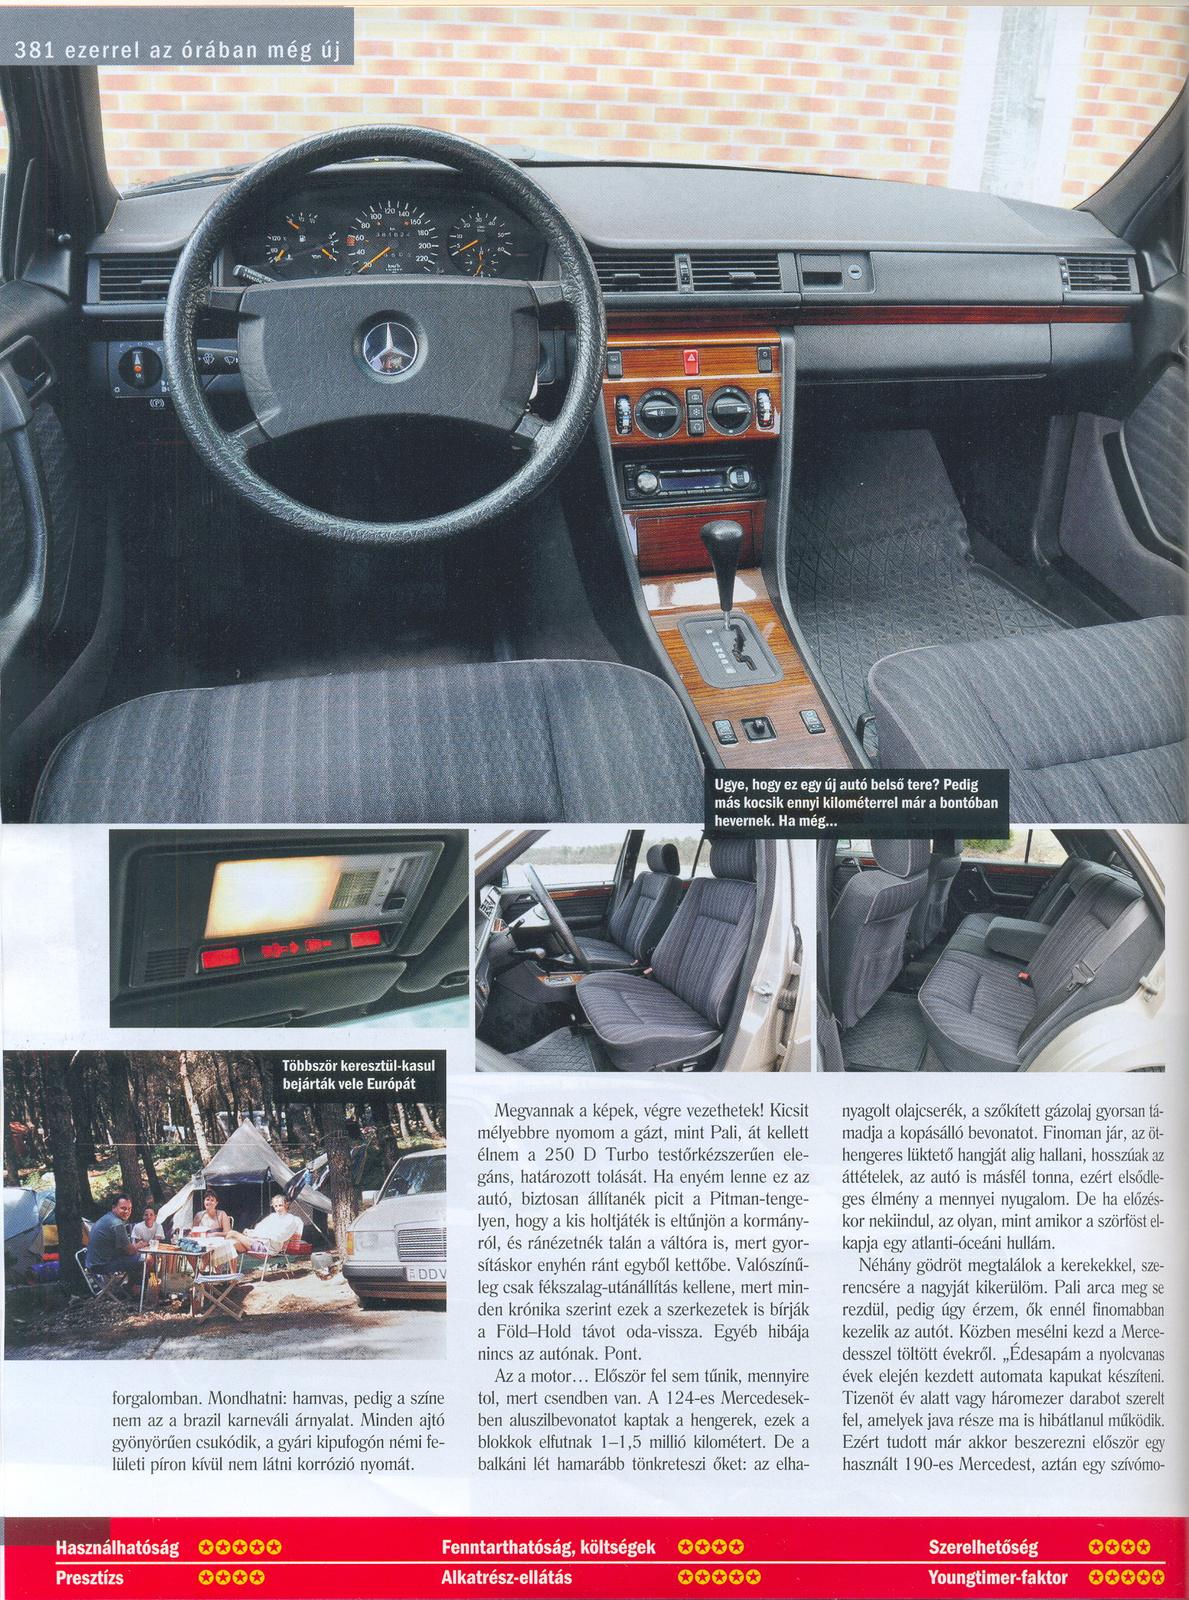 250D Turbo - Az Öreg cikk: 3